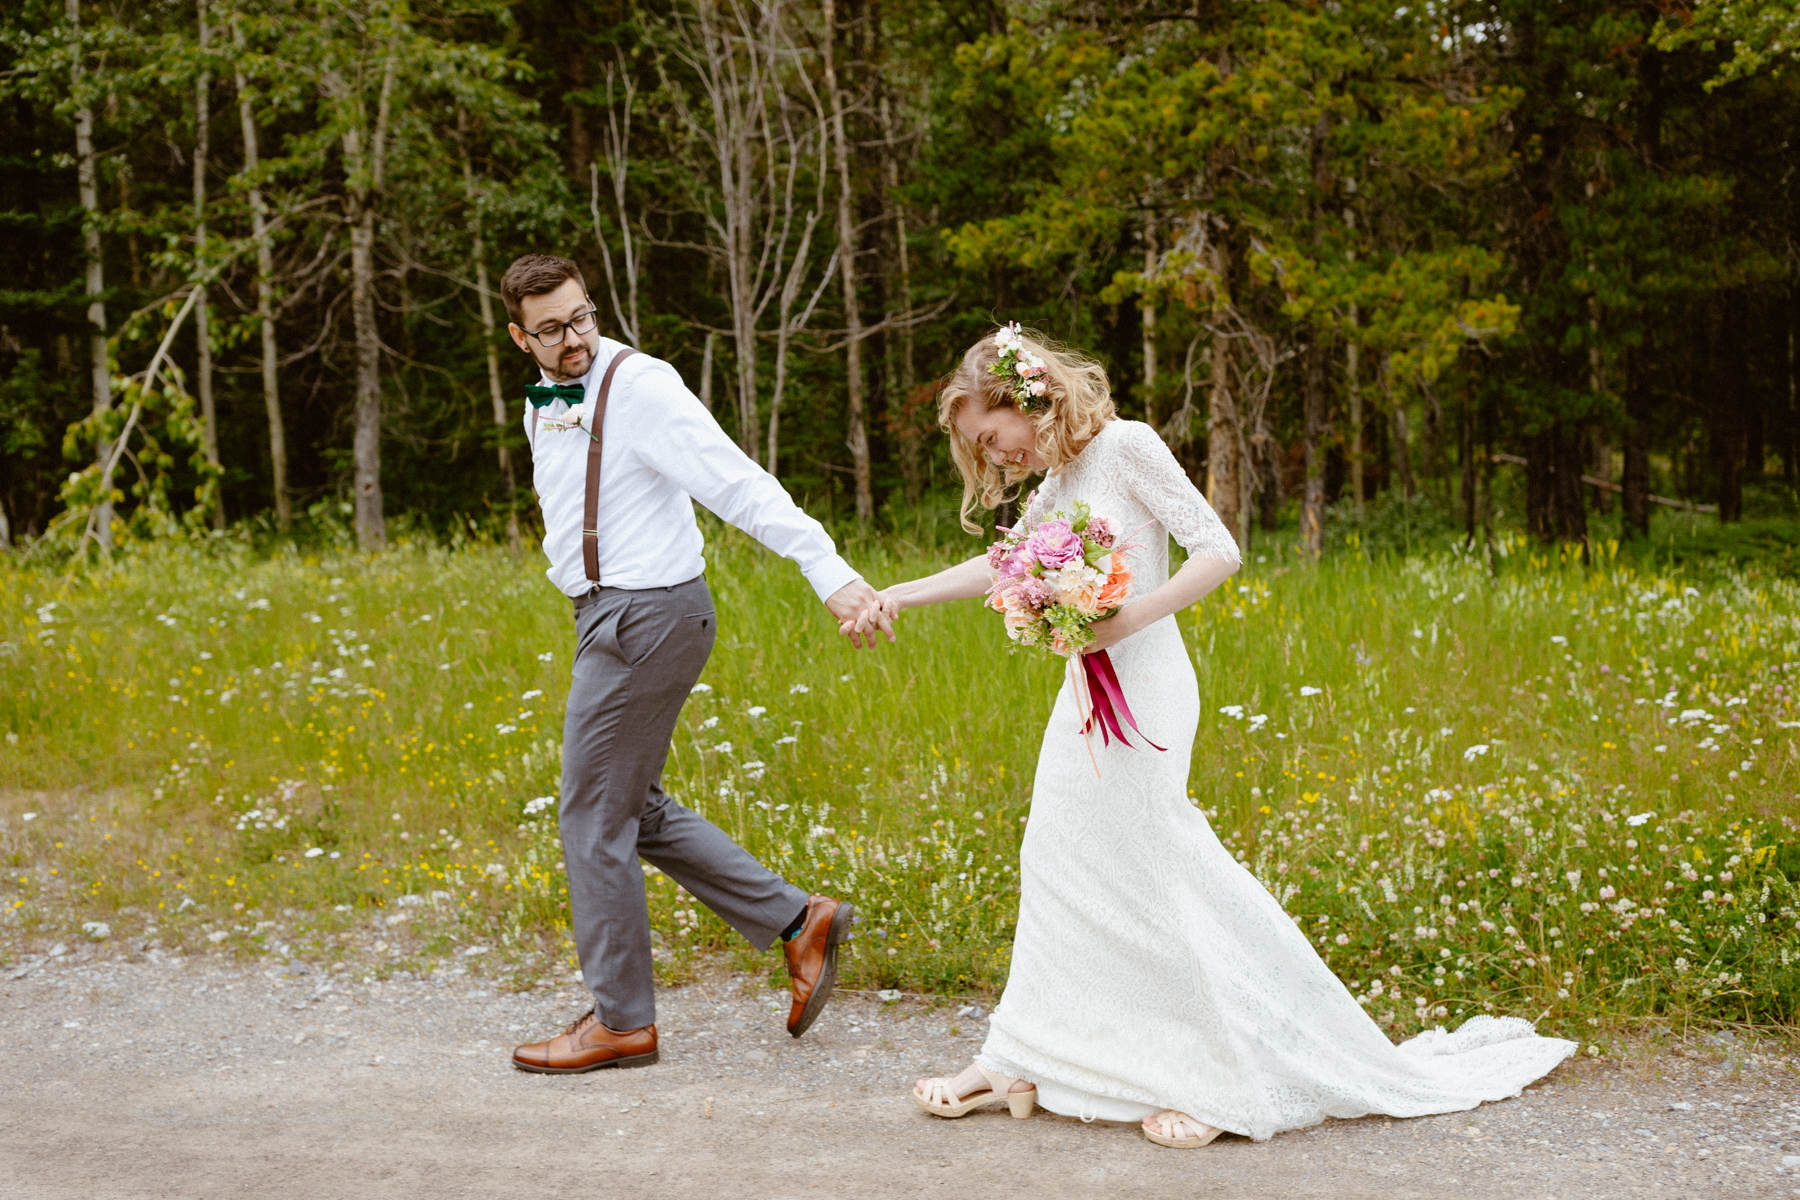 Kananaskis Wedding Photography at Pomeroy Mountain Lodge - Image  42